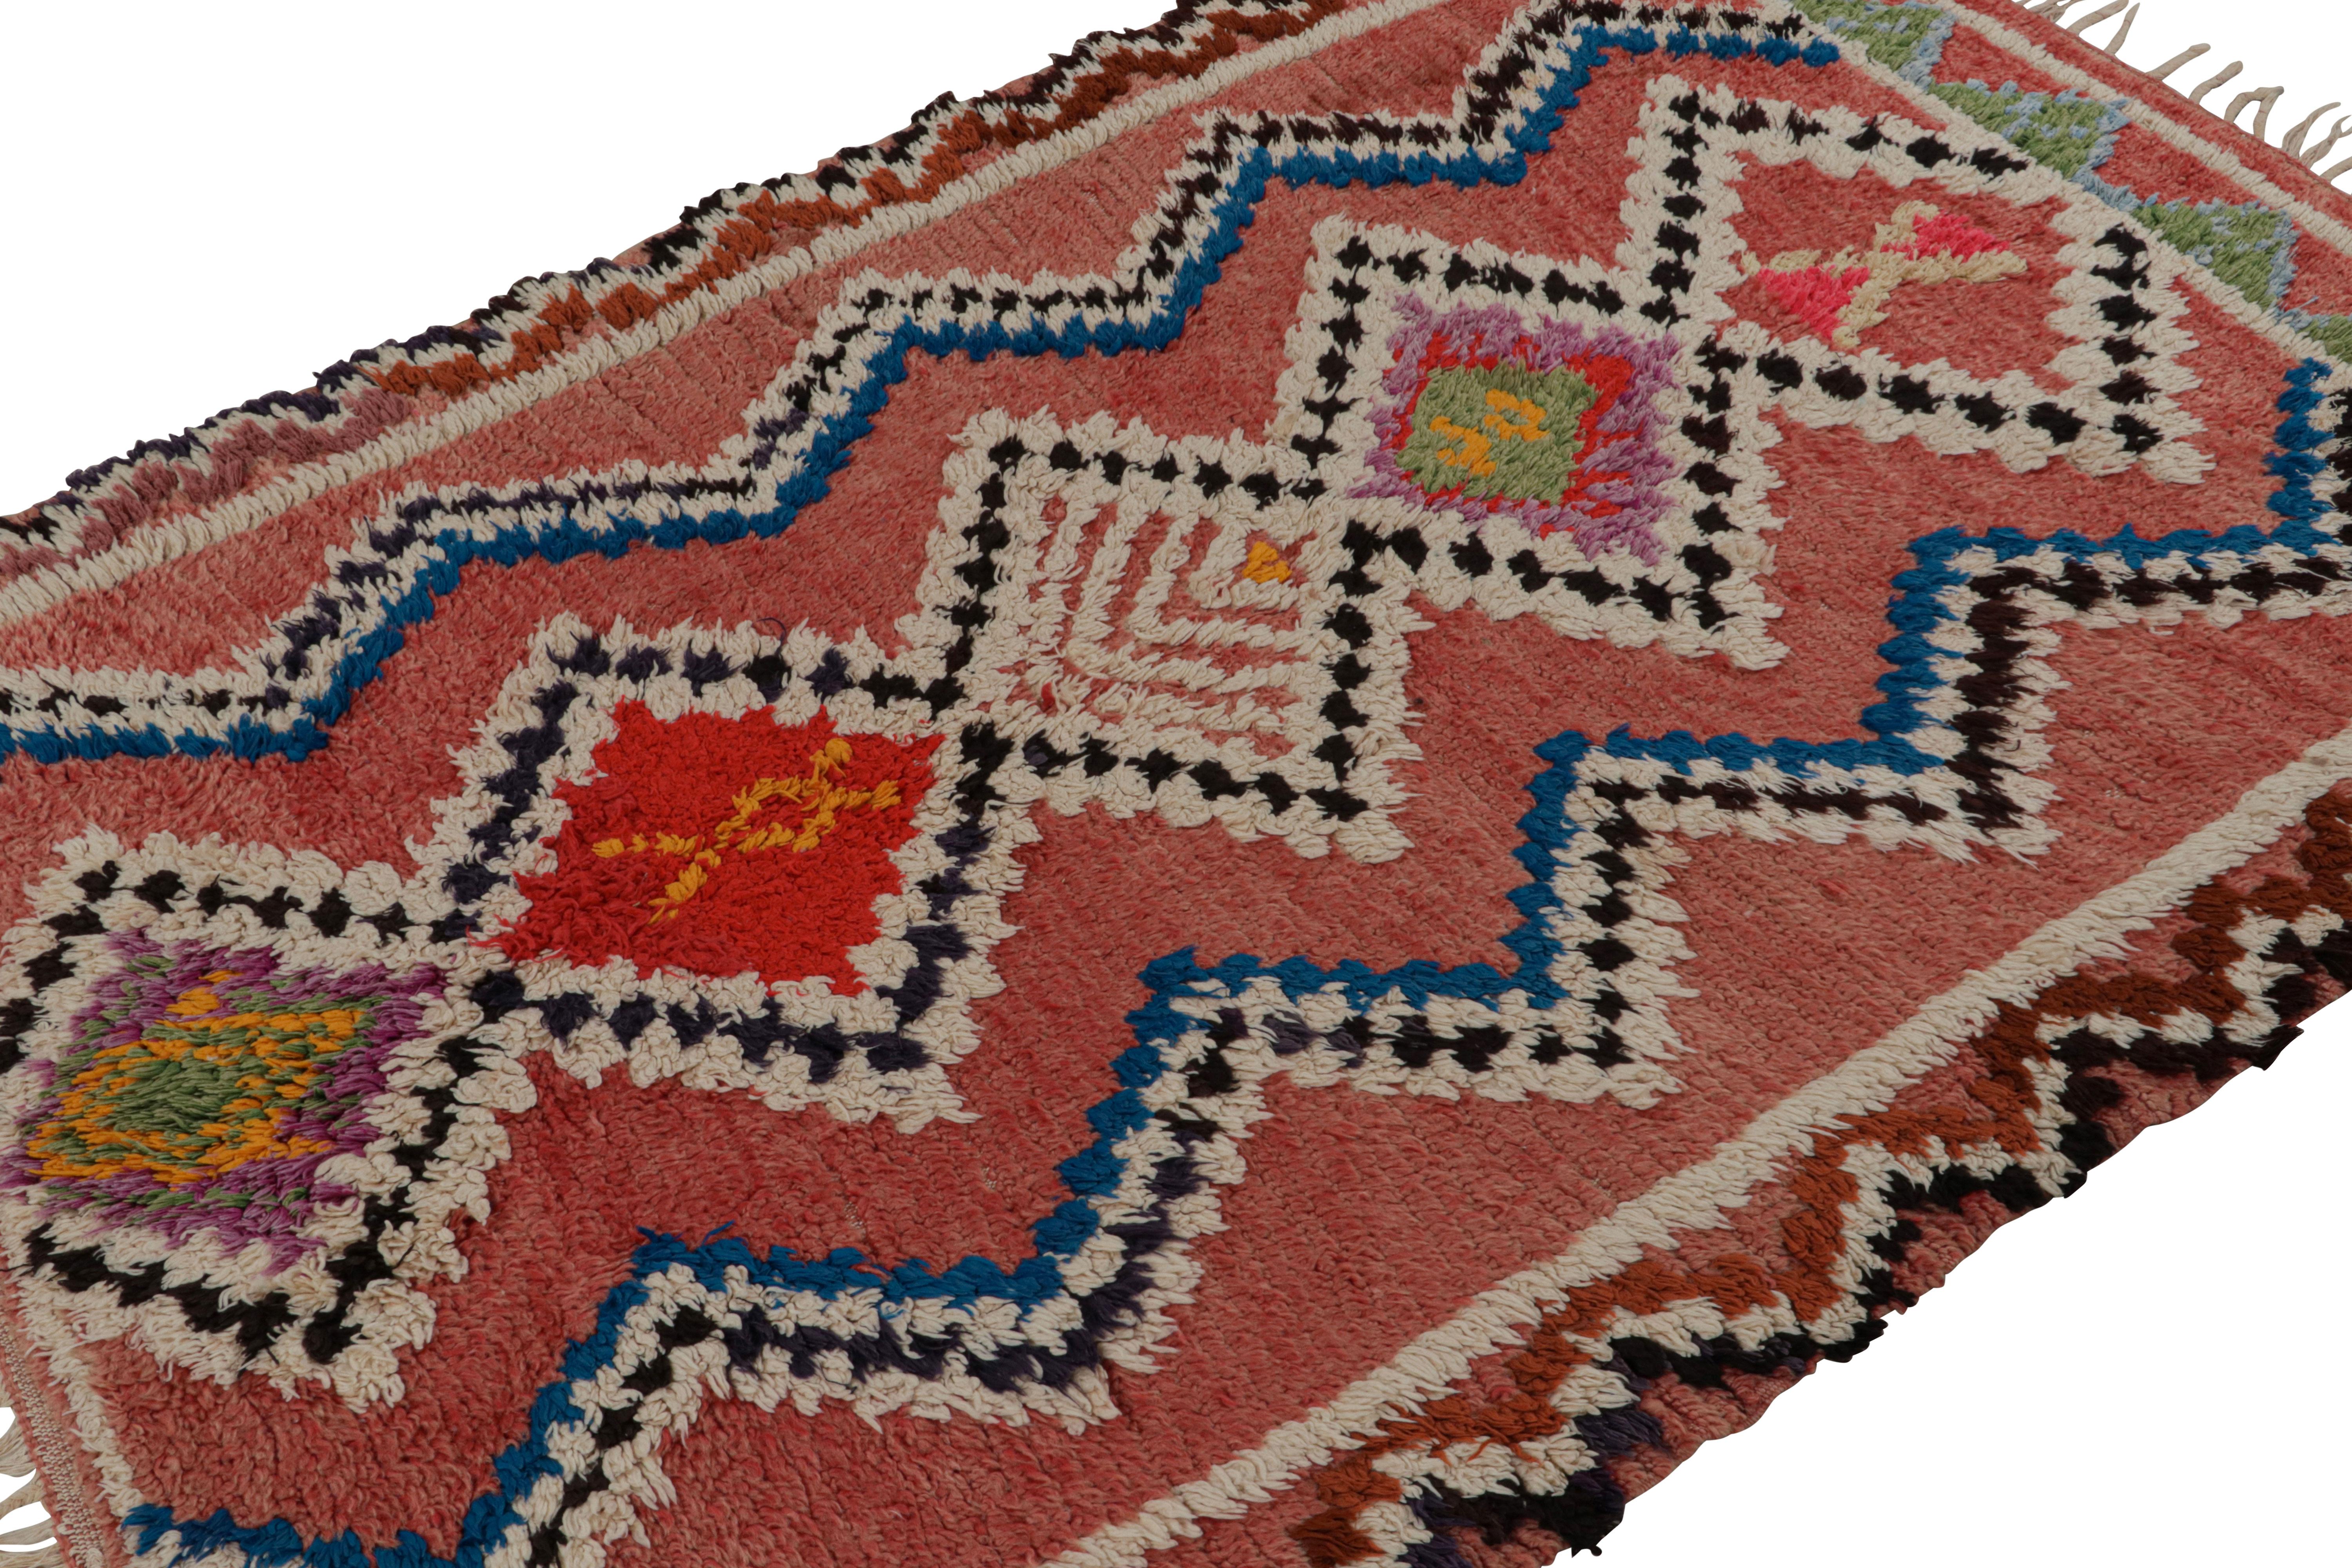 Dieser marokkanische Teppich im Format 5x7 mit polychromen geometrischen Mustern und Medaillons wurde um 1950-1960 in Wolle handgeknüpft und stammt vom Azilal-Stamm.  

Über das Design: 

Kenner bewundern diesen Läufer als ein kühnes, grafisches